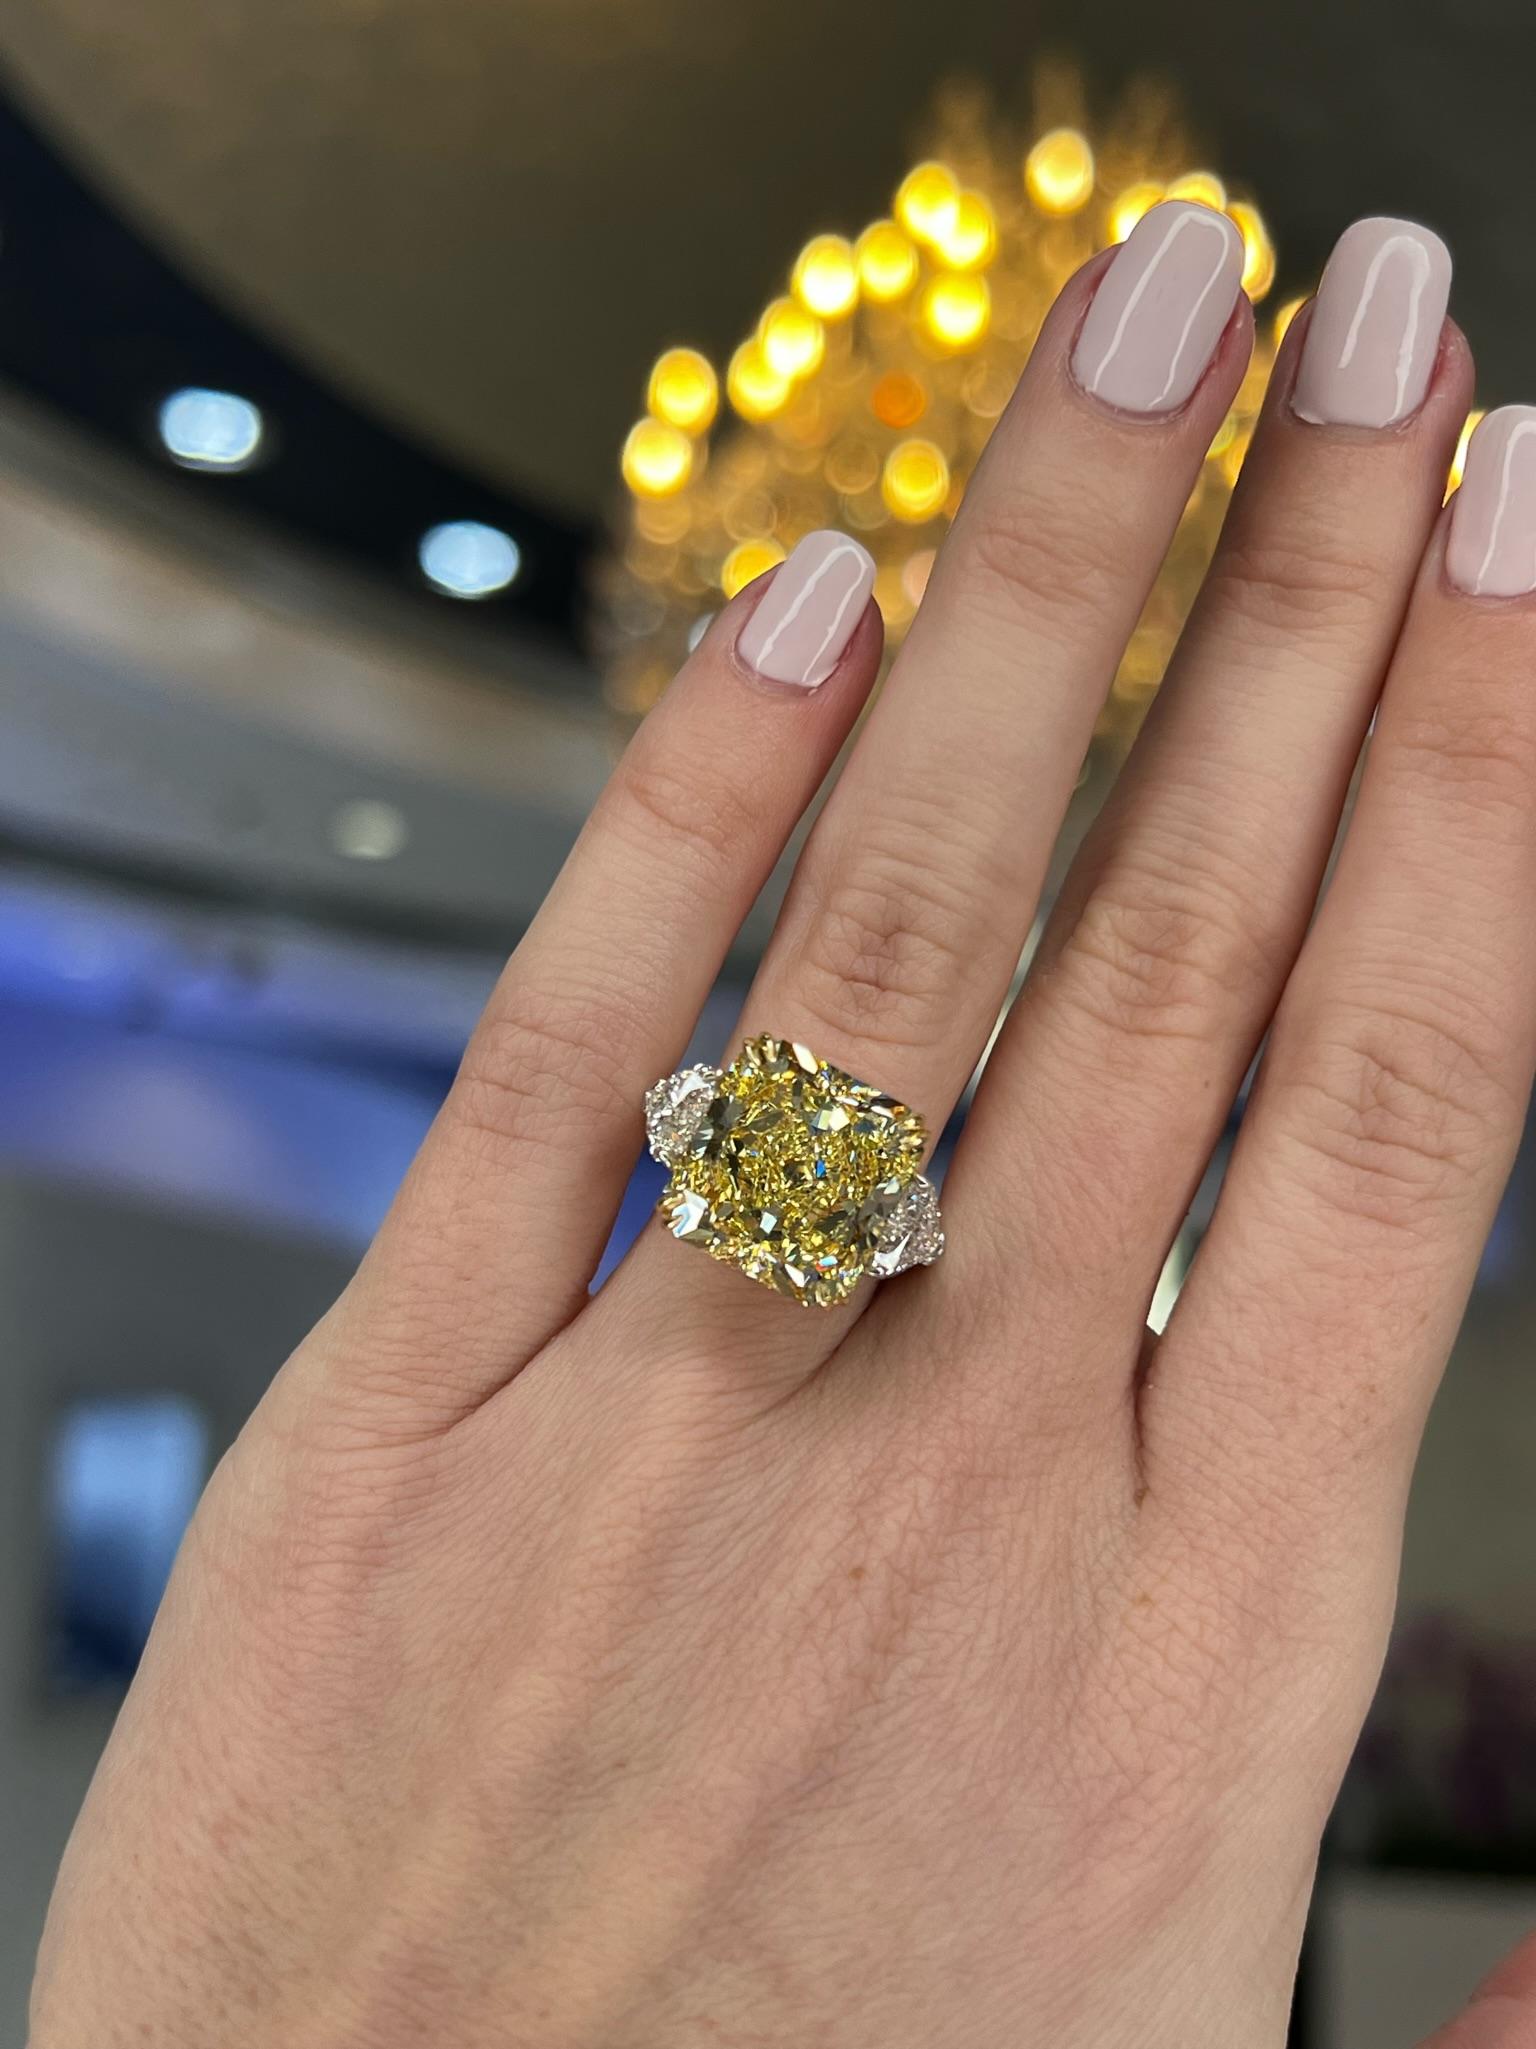 David Rosenberg 10.23 Radiant Fancy Yellow VVS1 GIA Diamond Engagement Ring For Sale 3